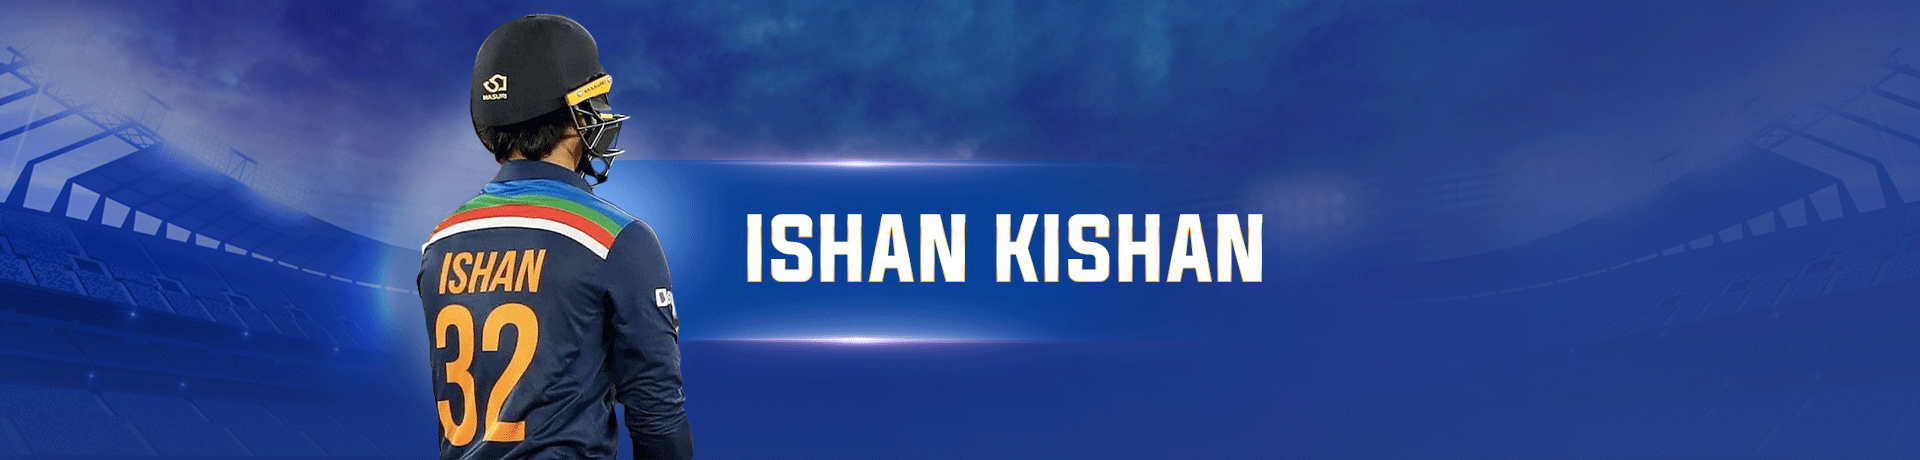 Ishan Kishan